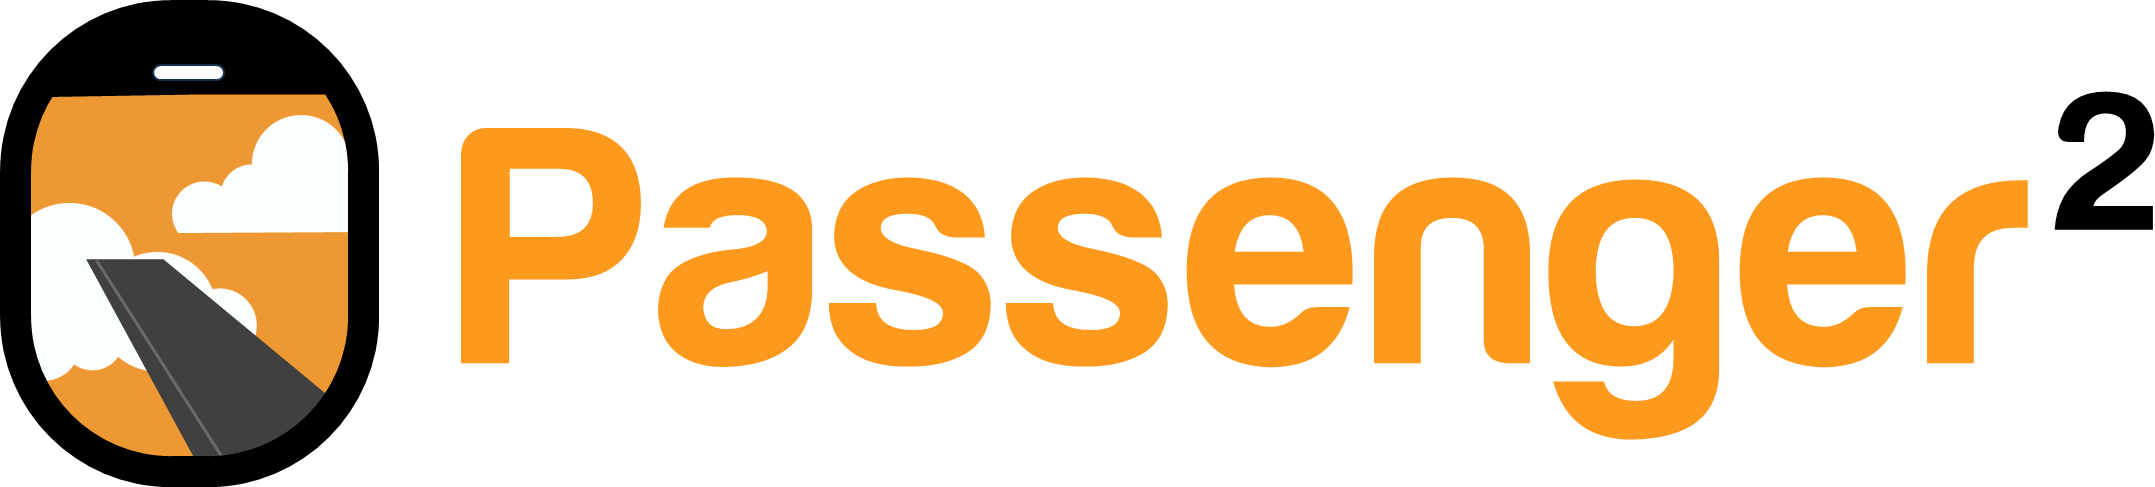 Passenger2 Logo